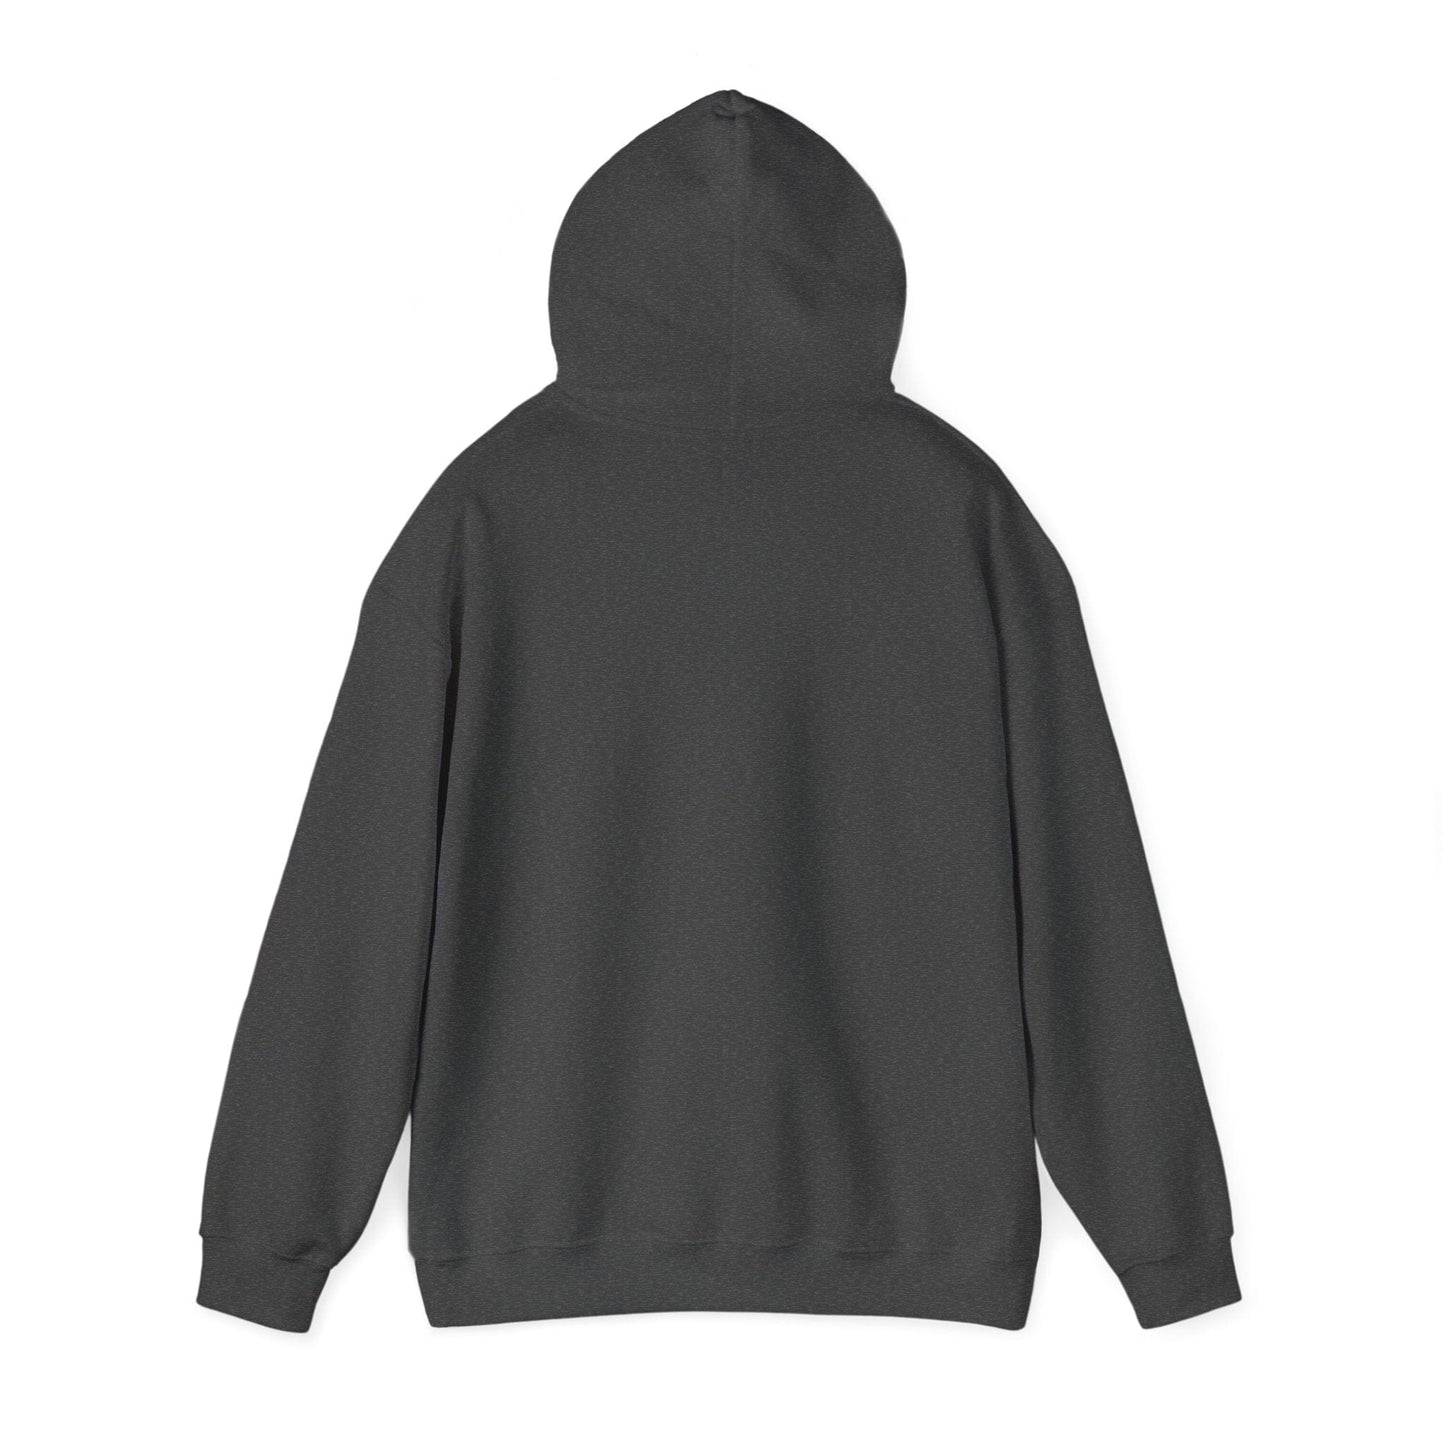 Rough Week Unisex Heavy Blend™ Hooded Sweatshirt